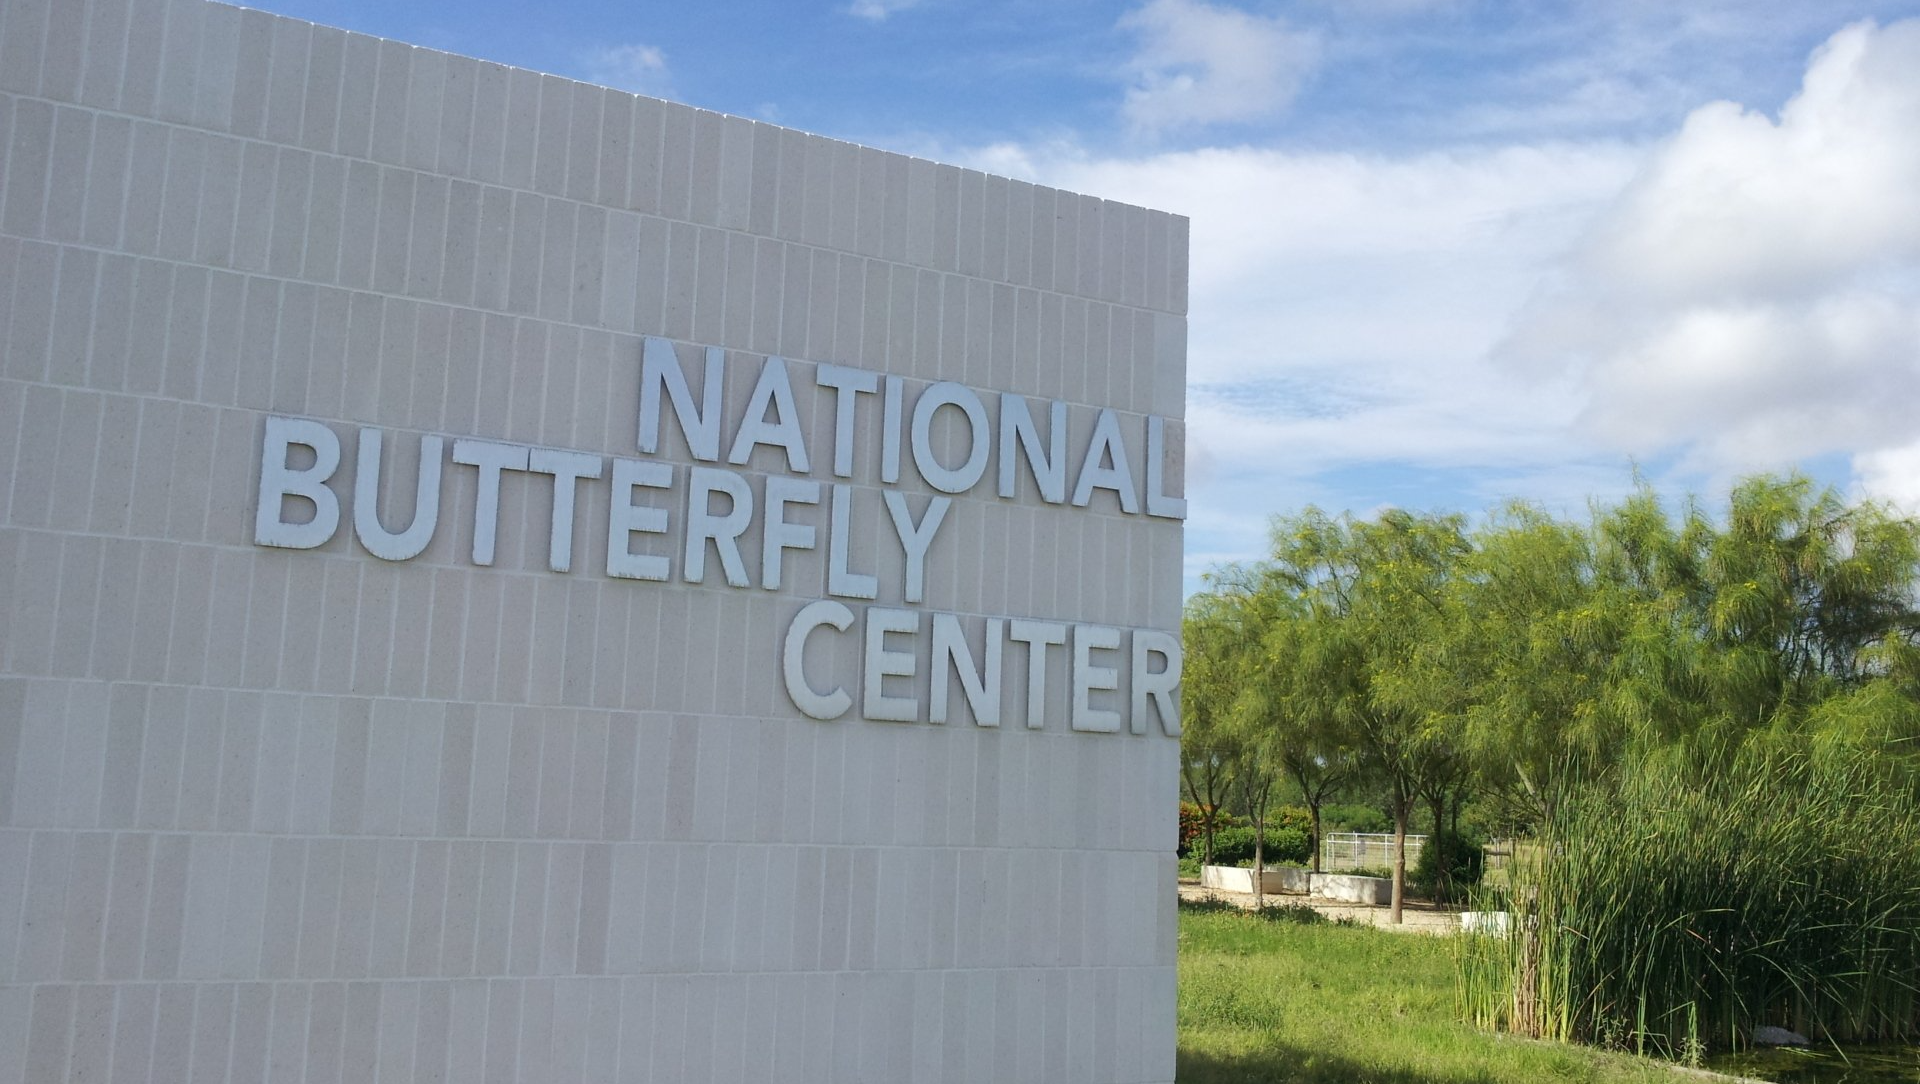 National-Butterfly-Center-McAllen-Texas